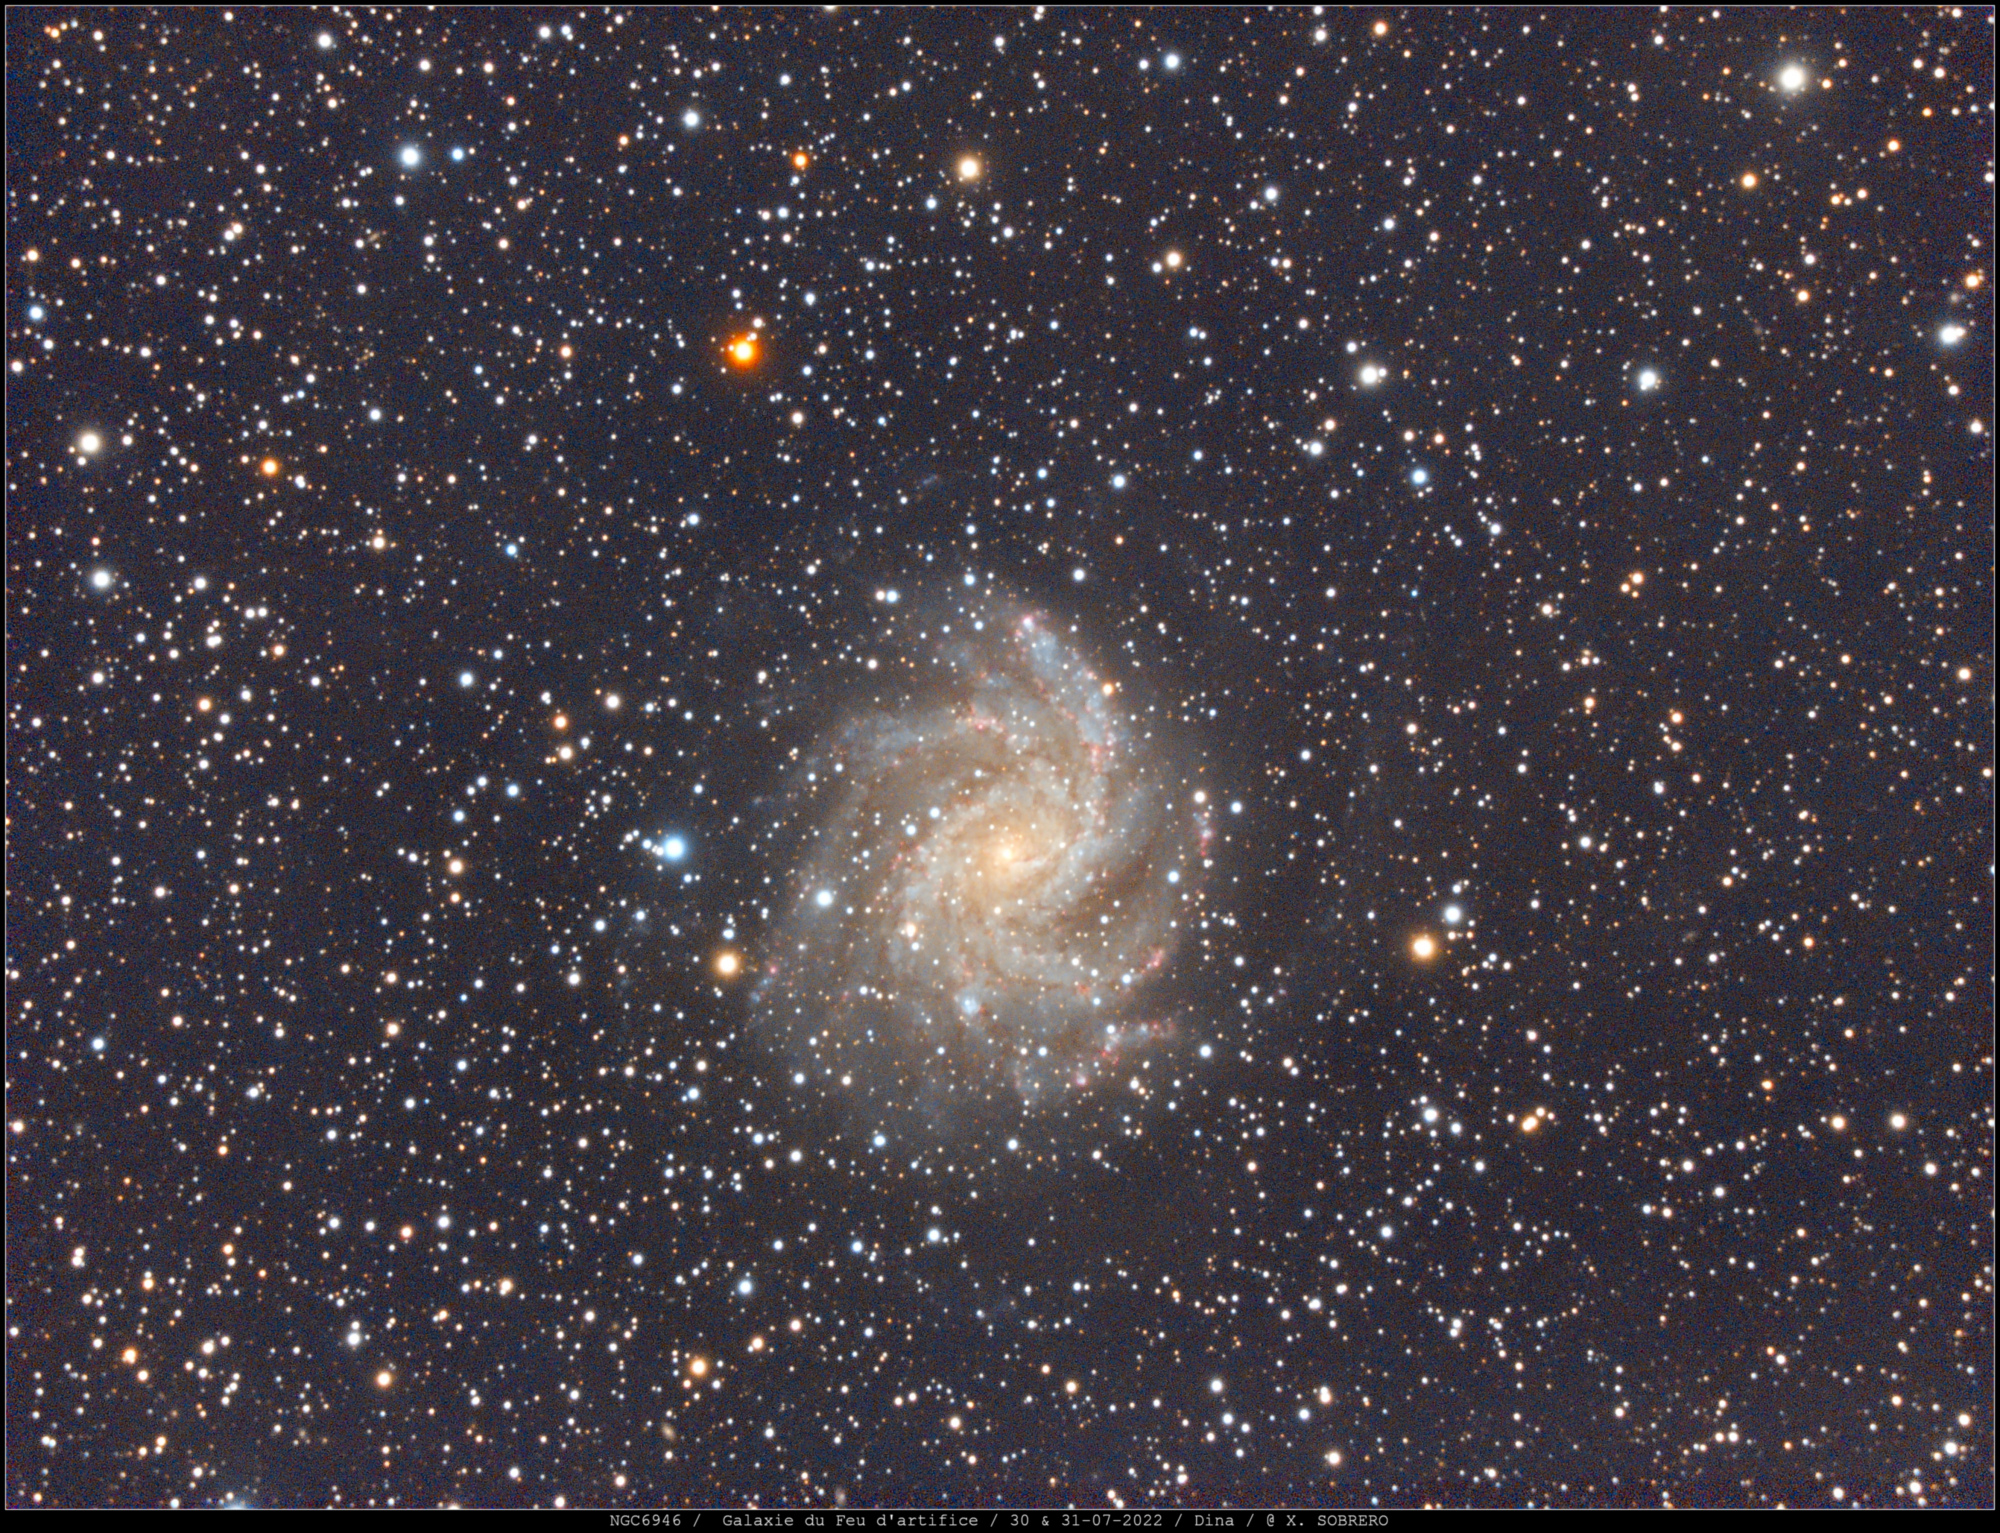 62ebe5cba932d_07bis-NGC6946_2022-07-30__31_SIRIL_GIMP_signee.thumb.jpg.c57308cd72dacc99b7268b9a05bba170.jpg